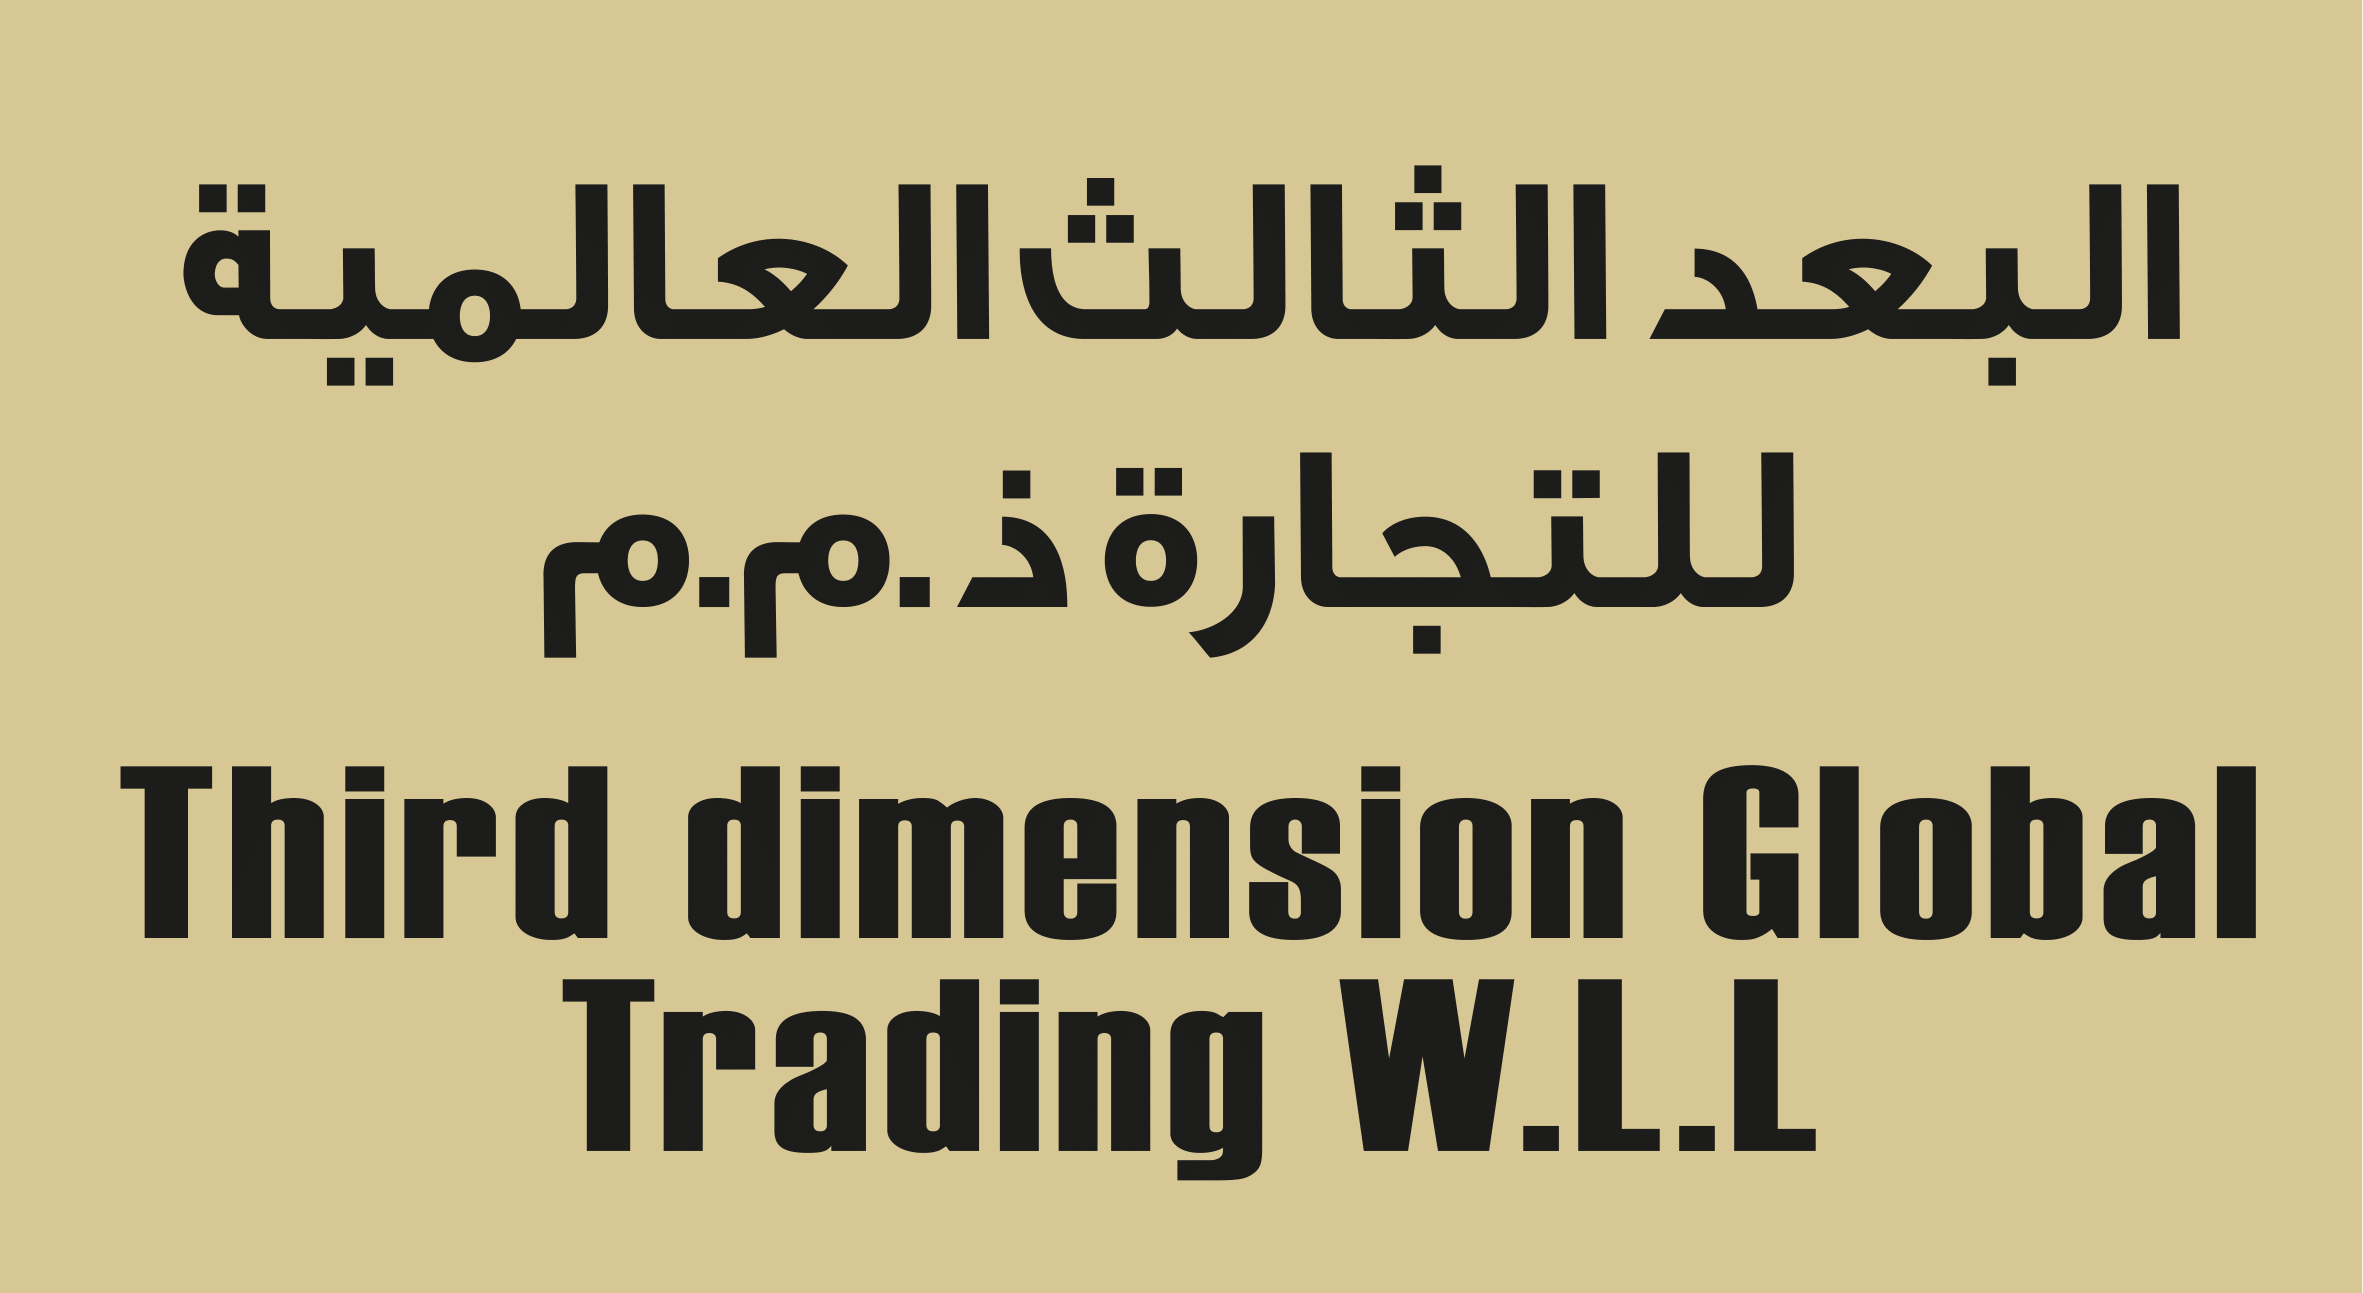 30x20 bb 07 - City Plaza - Third Dimension Global Trading W.L.L